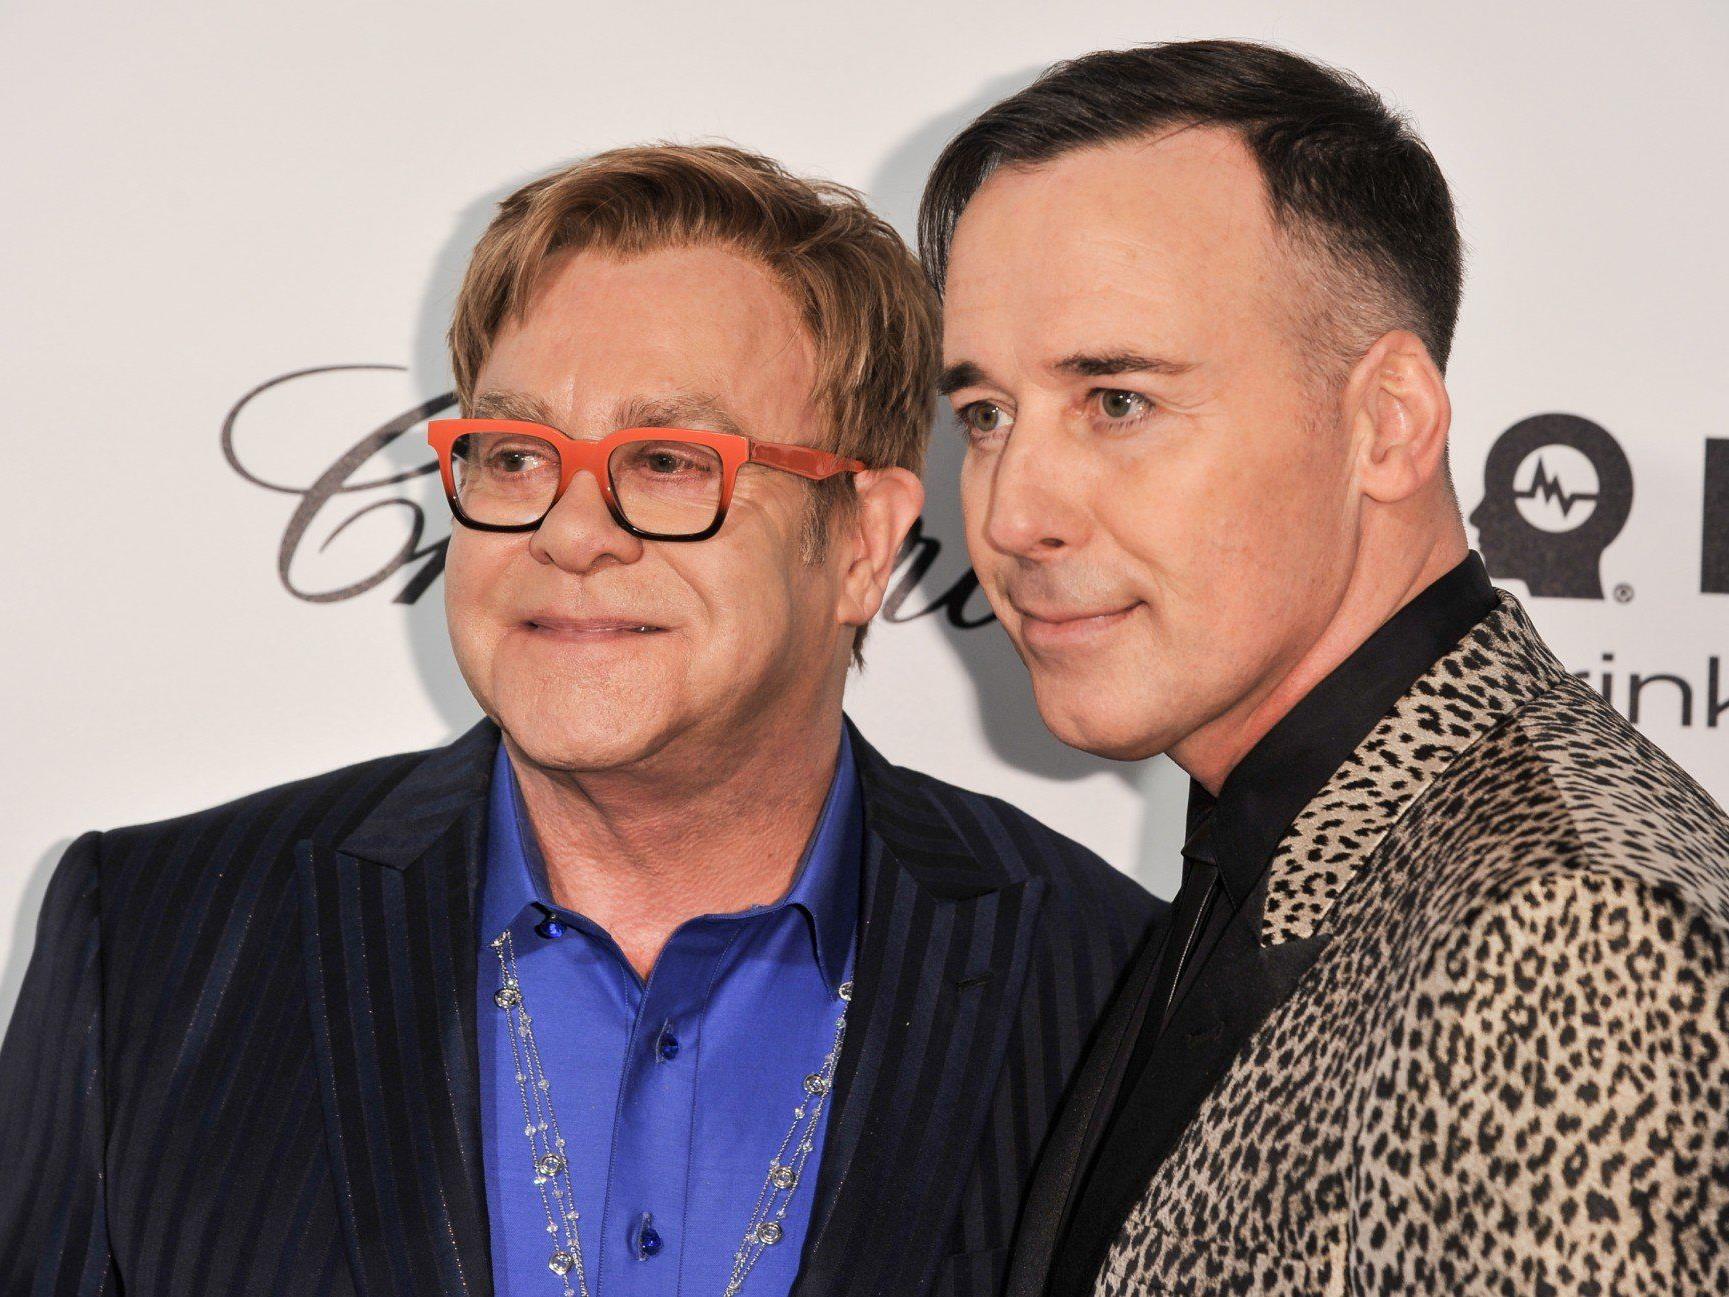 Nach Einführung der Homo-Ehe in England: Elton John und David Furnish heiraten.